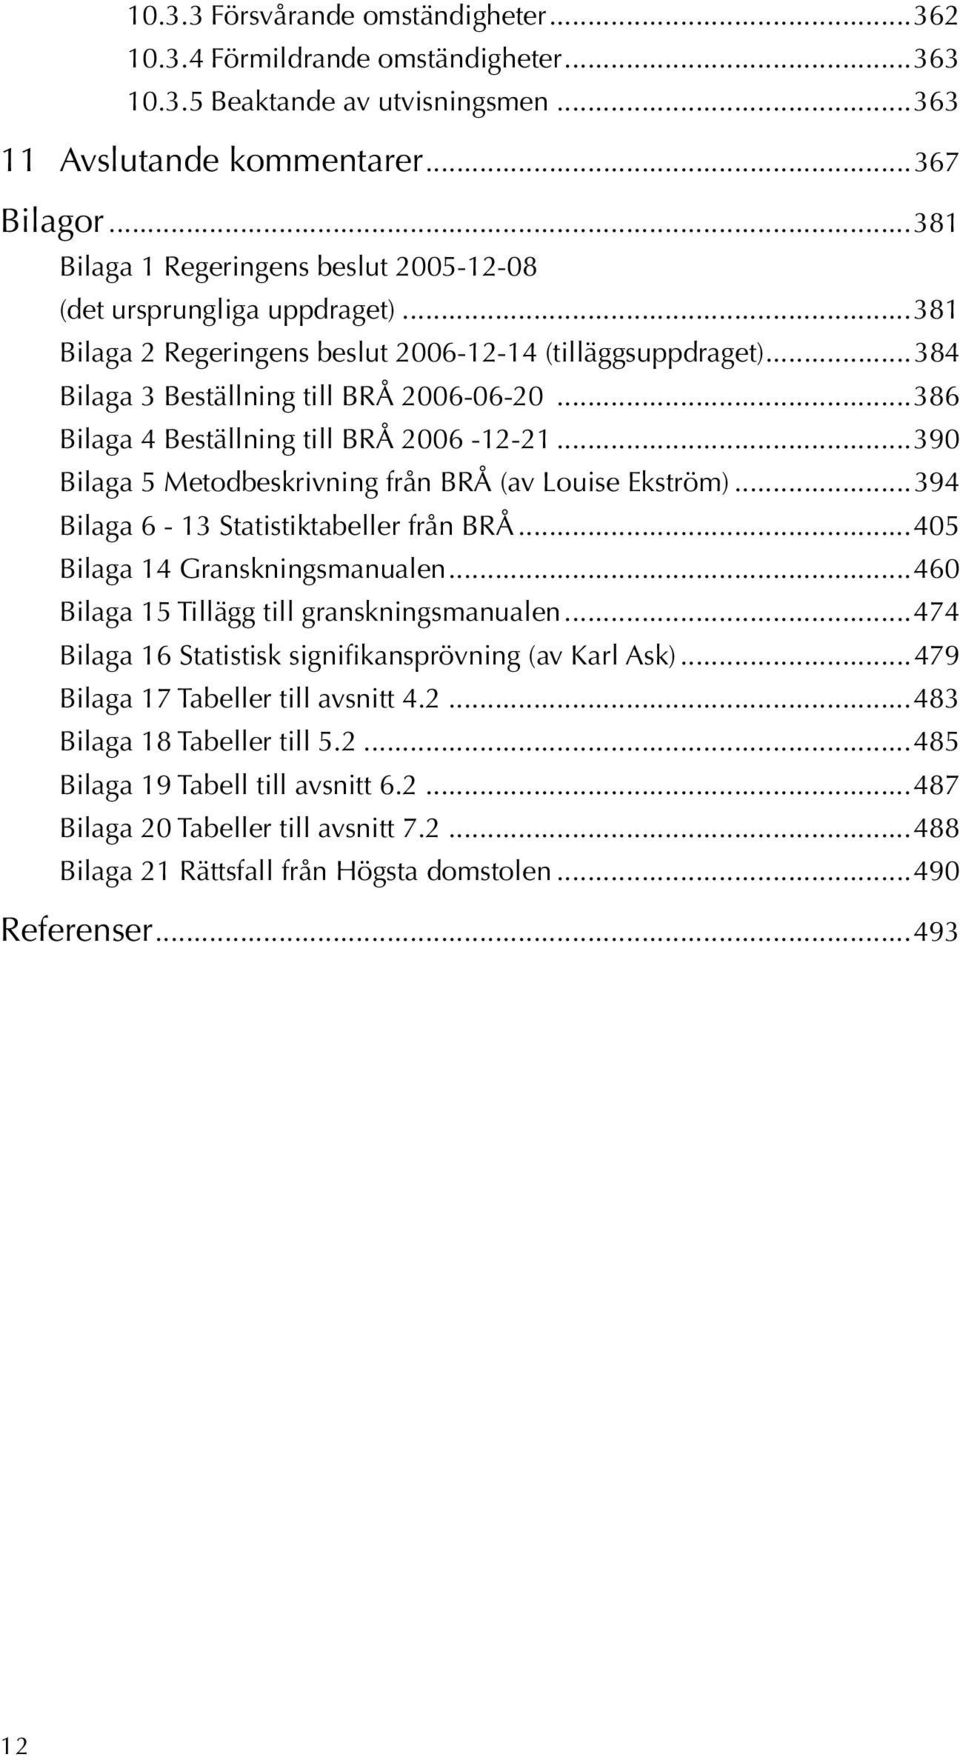 ..386 Bilaga 4 Beställning till BRÅ 2006-12-21...390 Bilaga 5 Metodbeskrivning från BRÅ (av Louise Ekström)...394 Bilaga 6-13 Statistiktabeller från BRÅ...405 Bilaga 14 Granskningsmanualen.